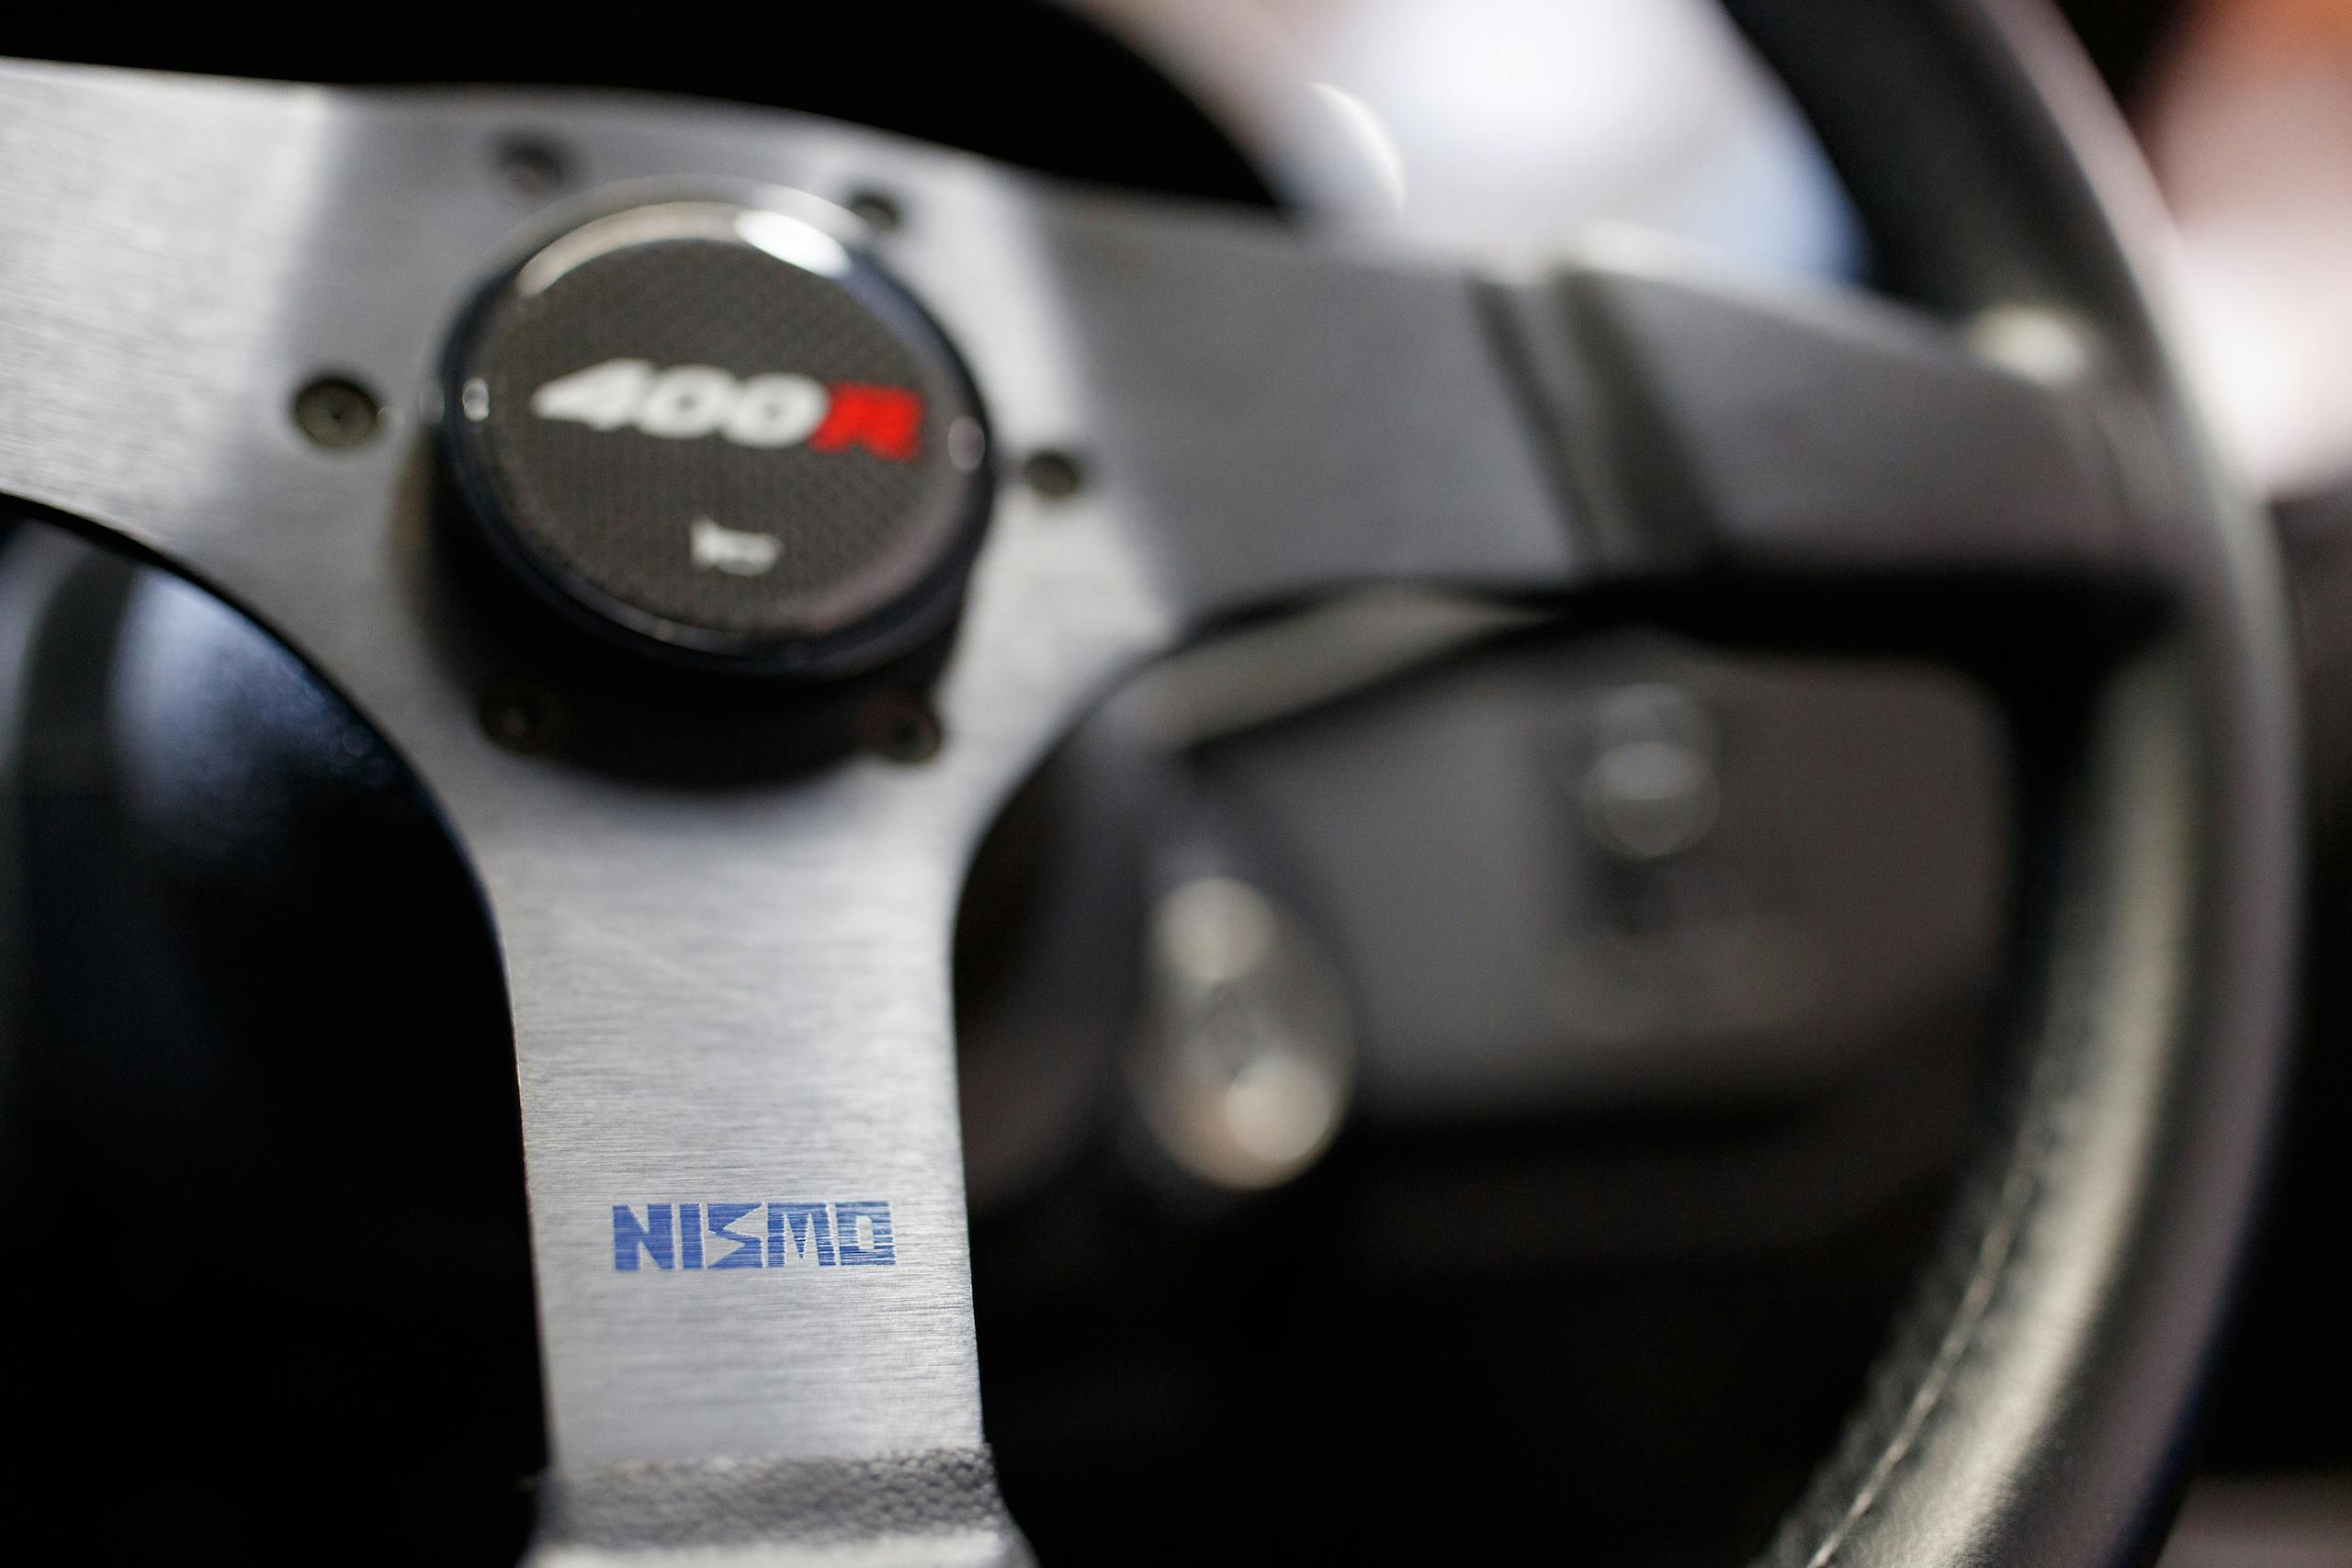 T-R NISMO 400R steering wheel detail